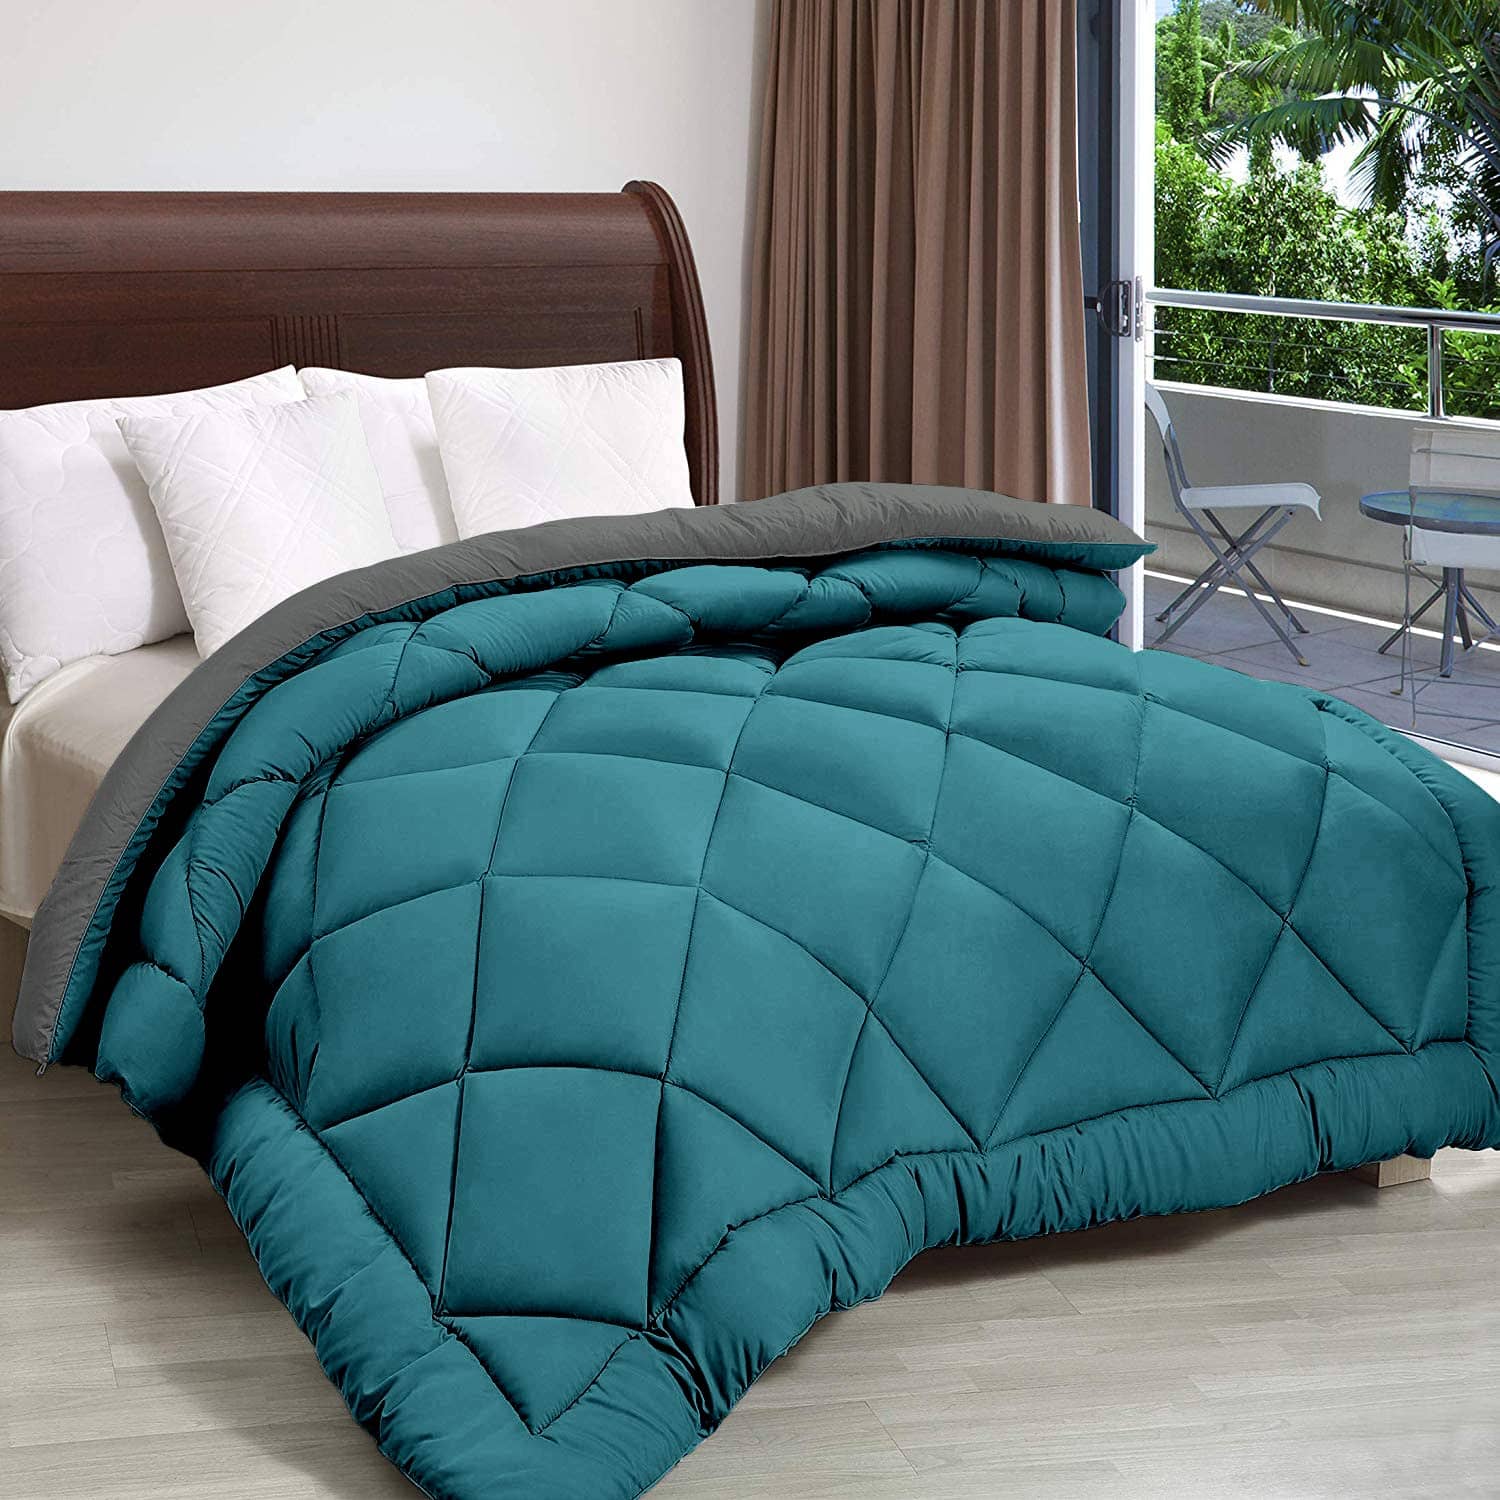 Top 5 Best Reversible Comforter Online